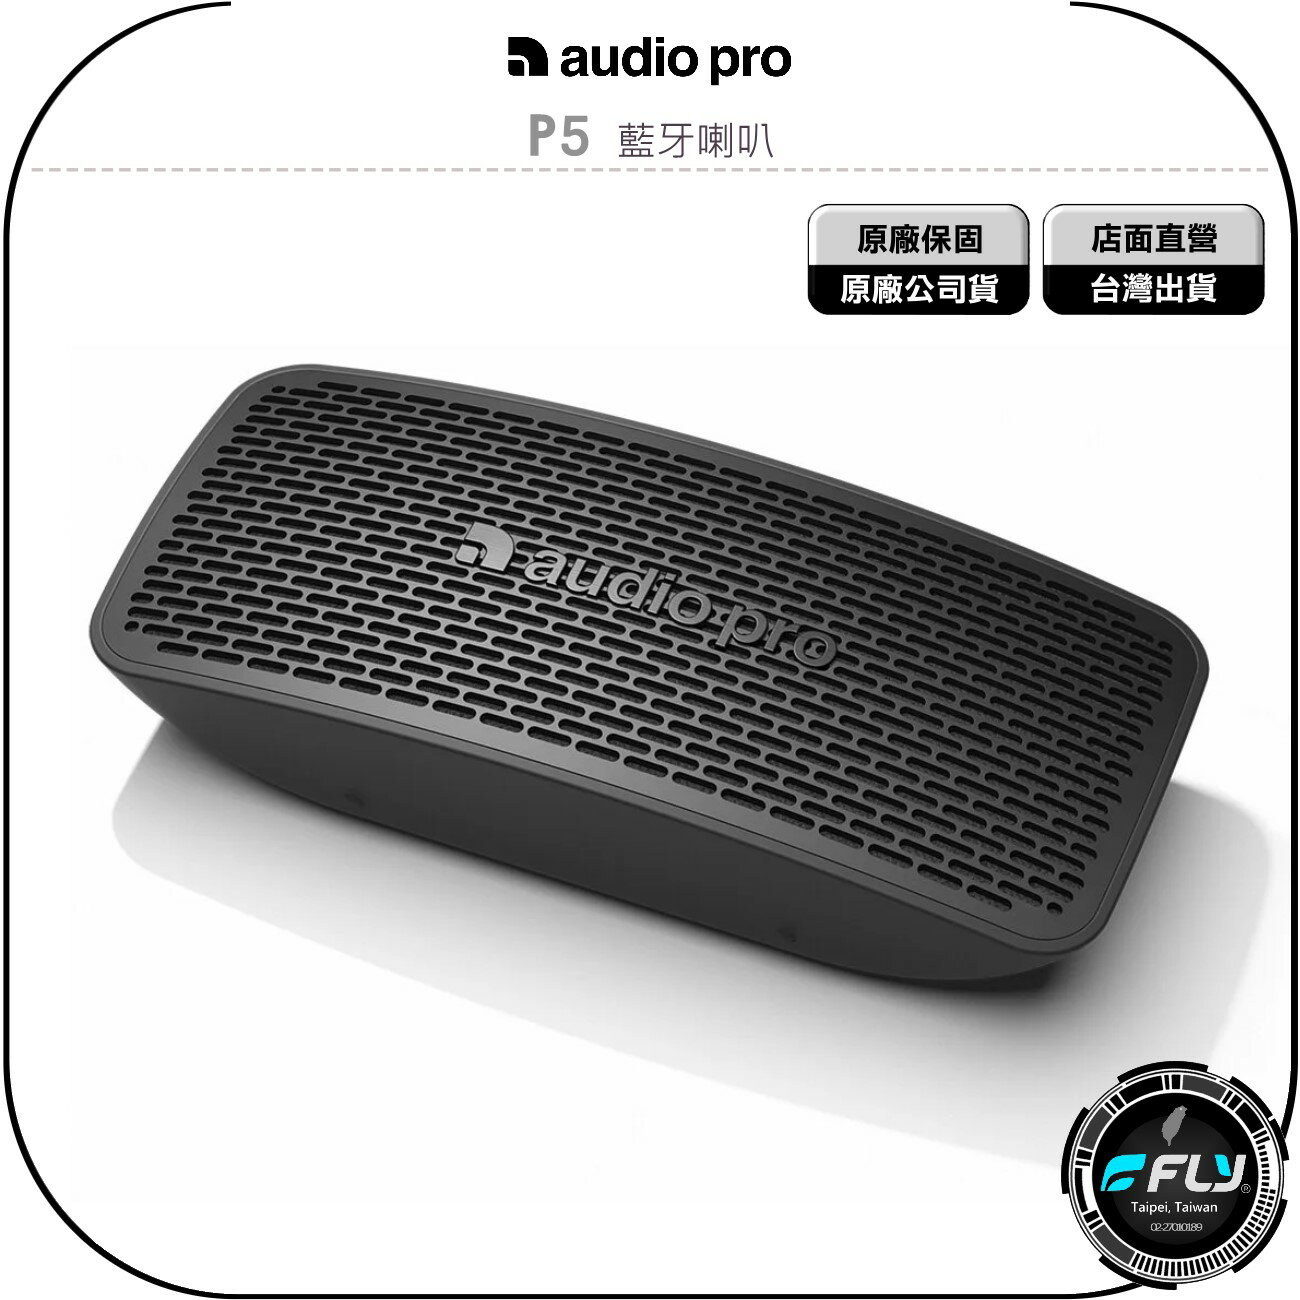 《飛翔無線3C》Audio Pro P5 藍牙喇叭◉公司貨◉藍芽音響◉北歐設計◉立體聲◉攜帶便利◉長效續航